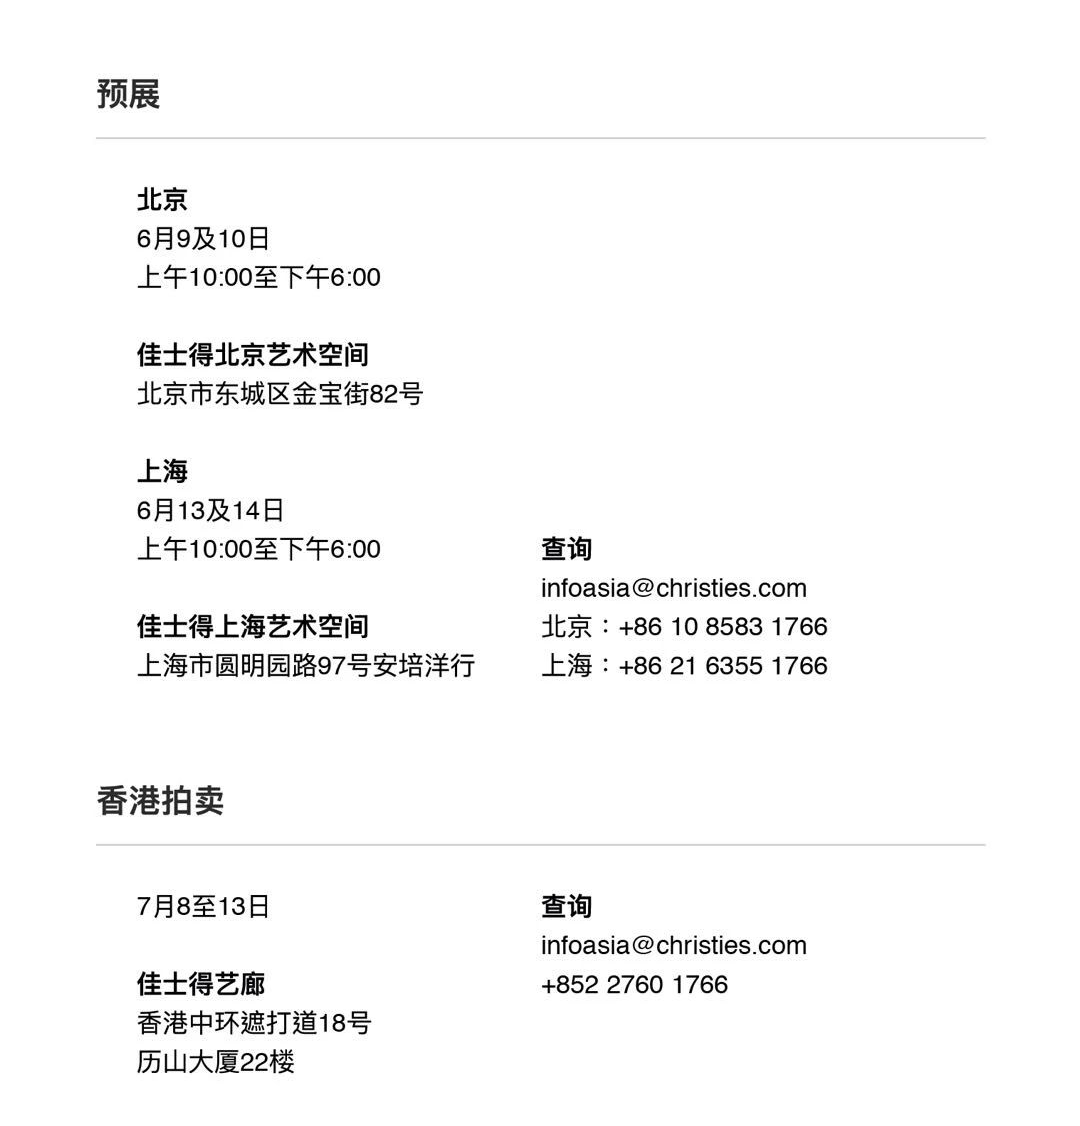 【精选佳作】佳士得拍卖——香港七月拍卖北京及上海预展 | 6月9及10日，6月13及14日